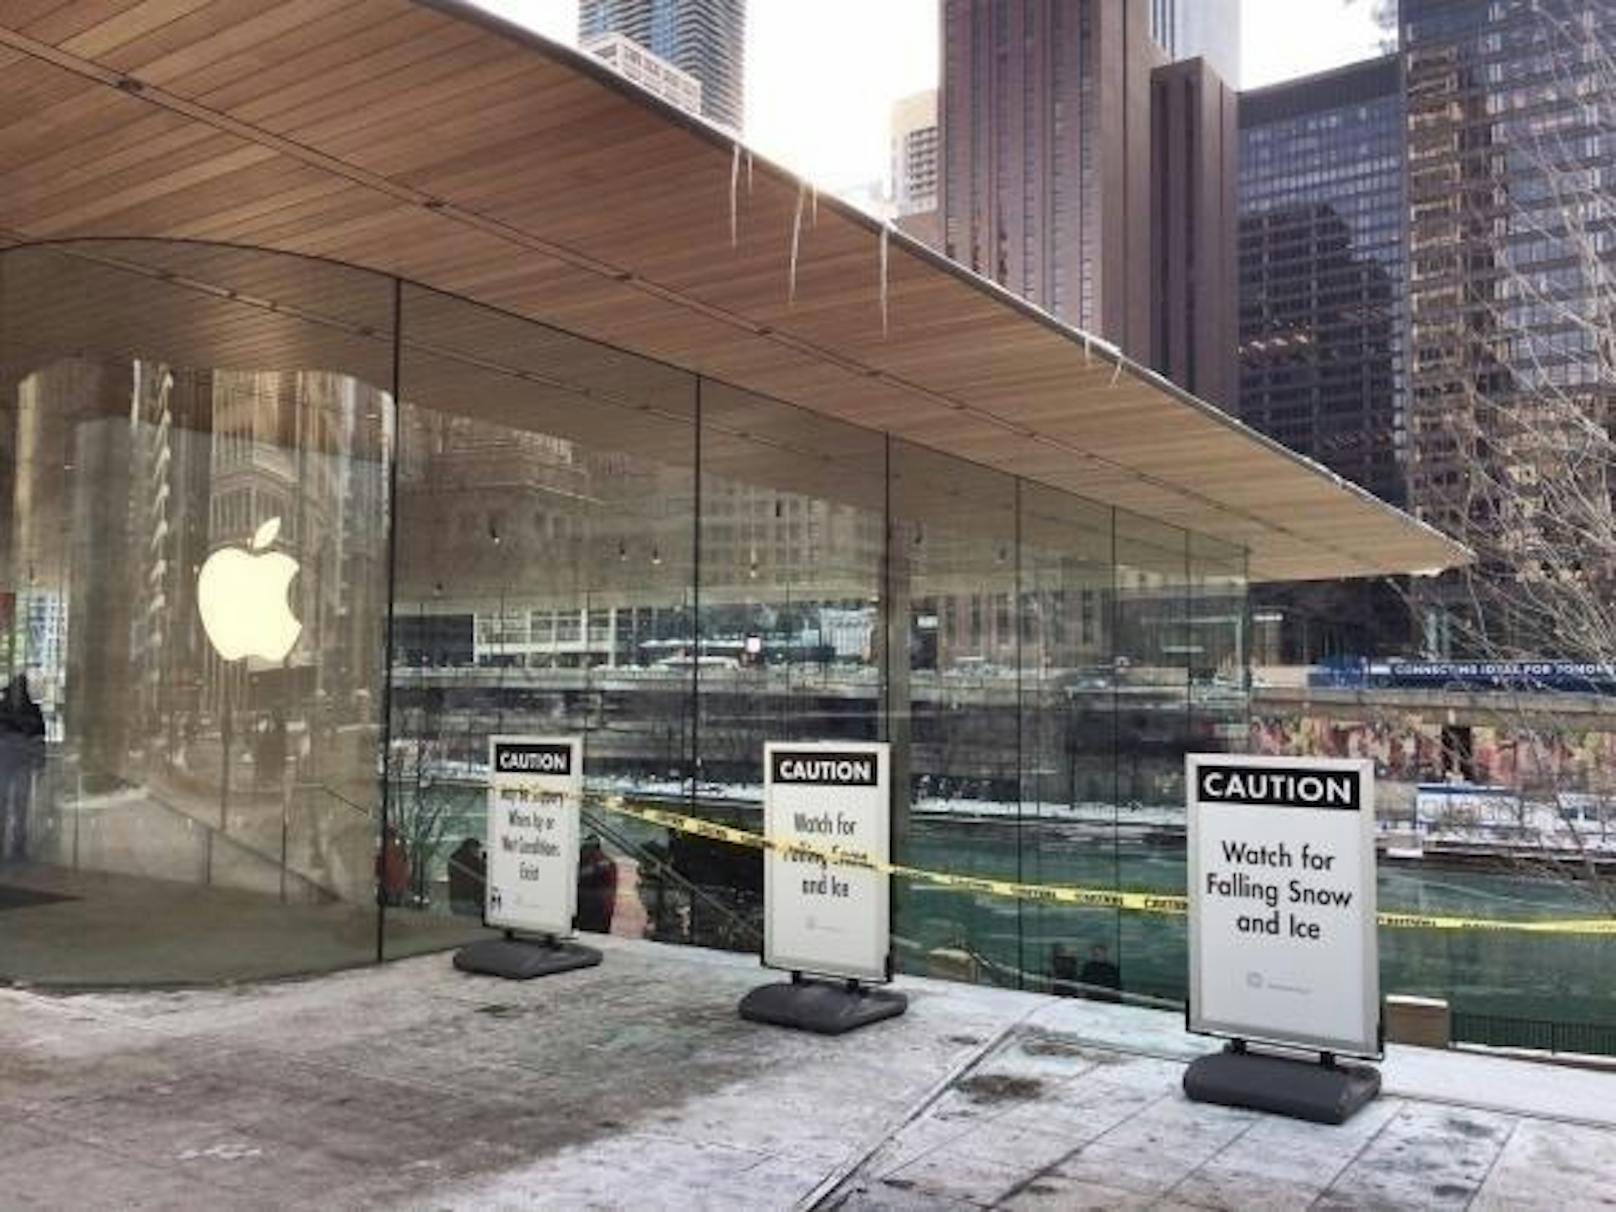 Apple hat im Oktober 2017 in Chicago einen neuen Store eröffnet. Der Verkaufsladen hat eine riesige Glasfront und ein Flachdach. Allerdings bildeten sich daran wegen der tiefen Temperaturen Eiszapfen, weshalb aus Sicherheitsgründen Teile des Innenhofs abgesperrt werden mussten. Ein Sprecher des Unternehmens erklärte gegenüber der "Chicago Tribune", dass das Dach über ein Heizsystem verfüge und die entsprechende Software über ein Update angepasst worden sei.